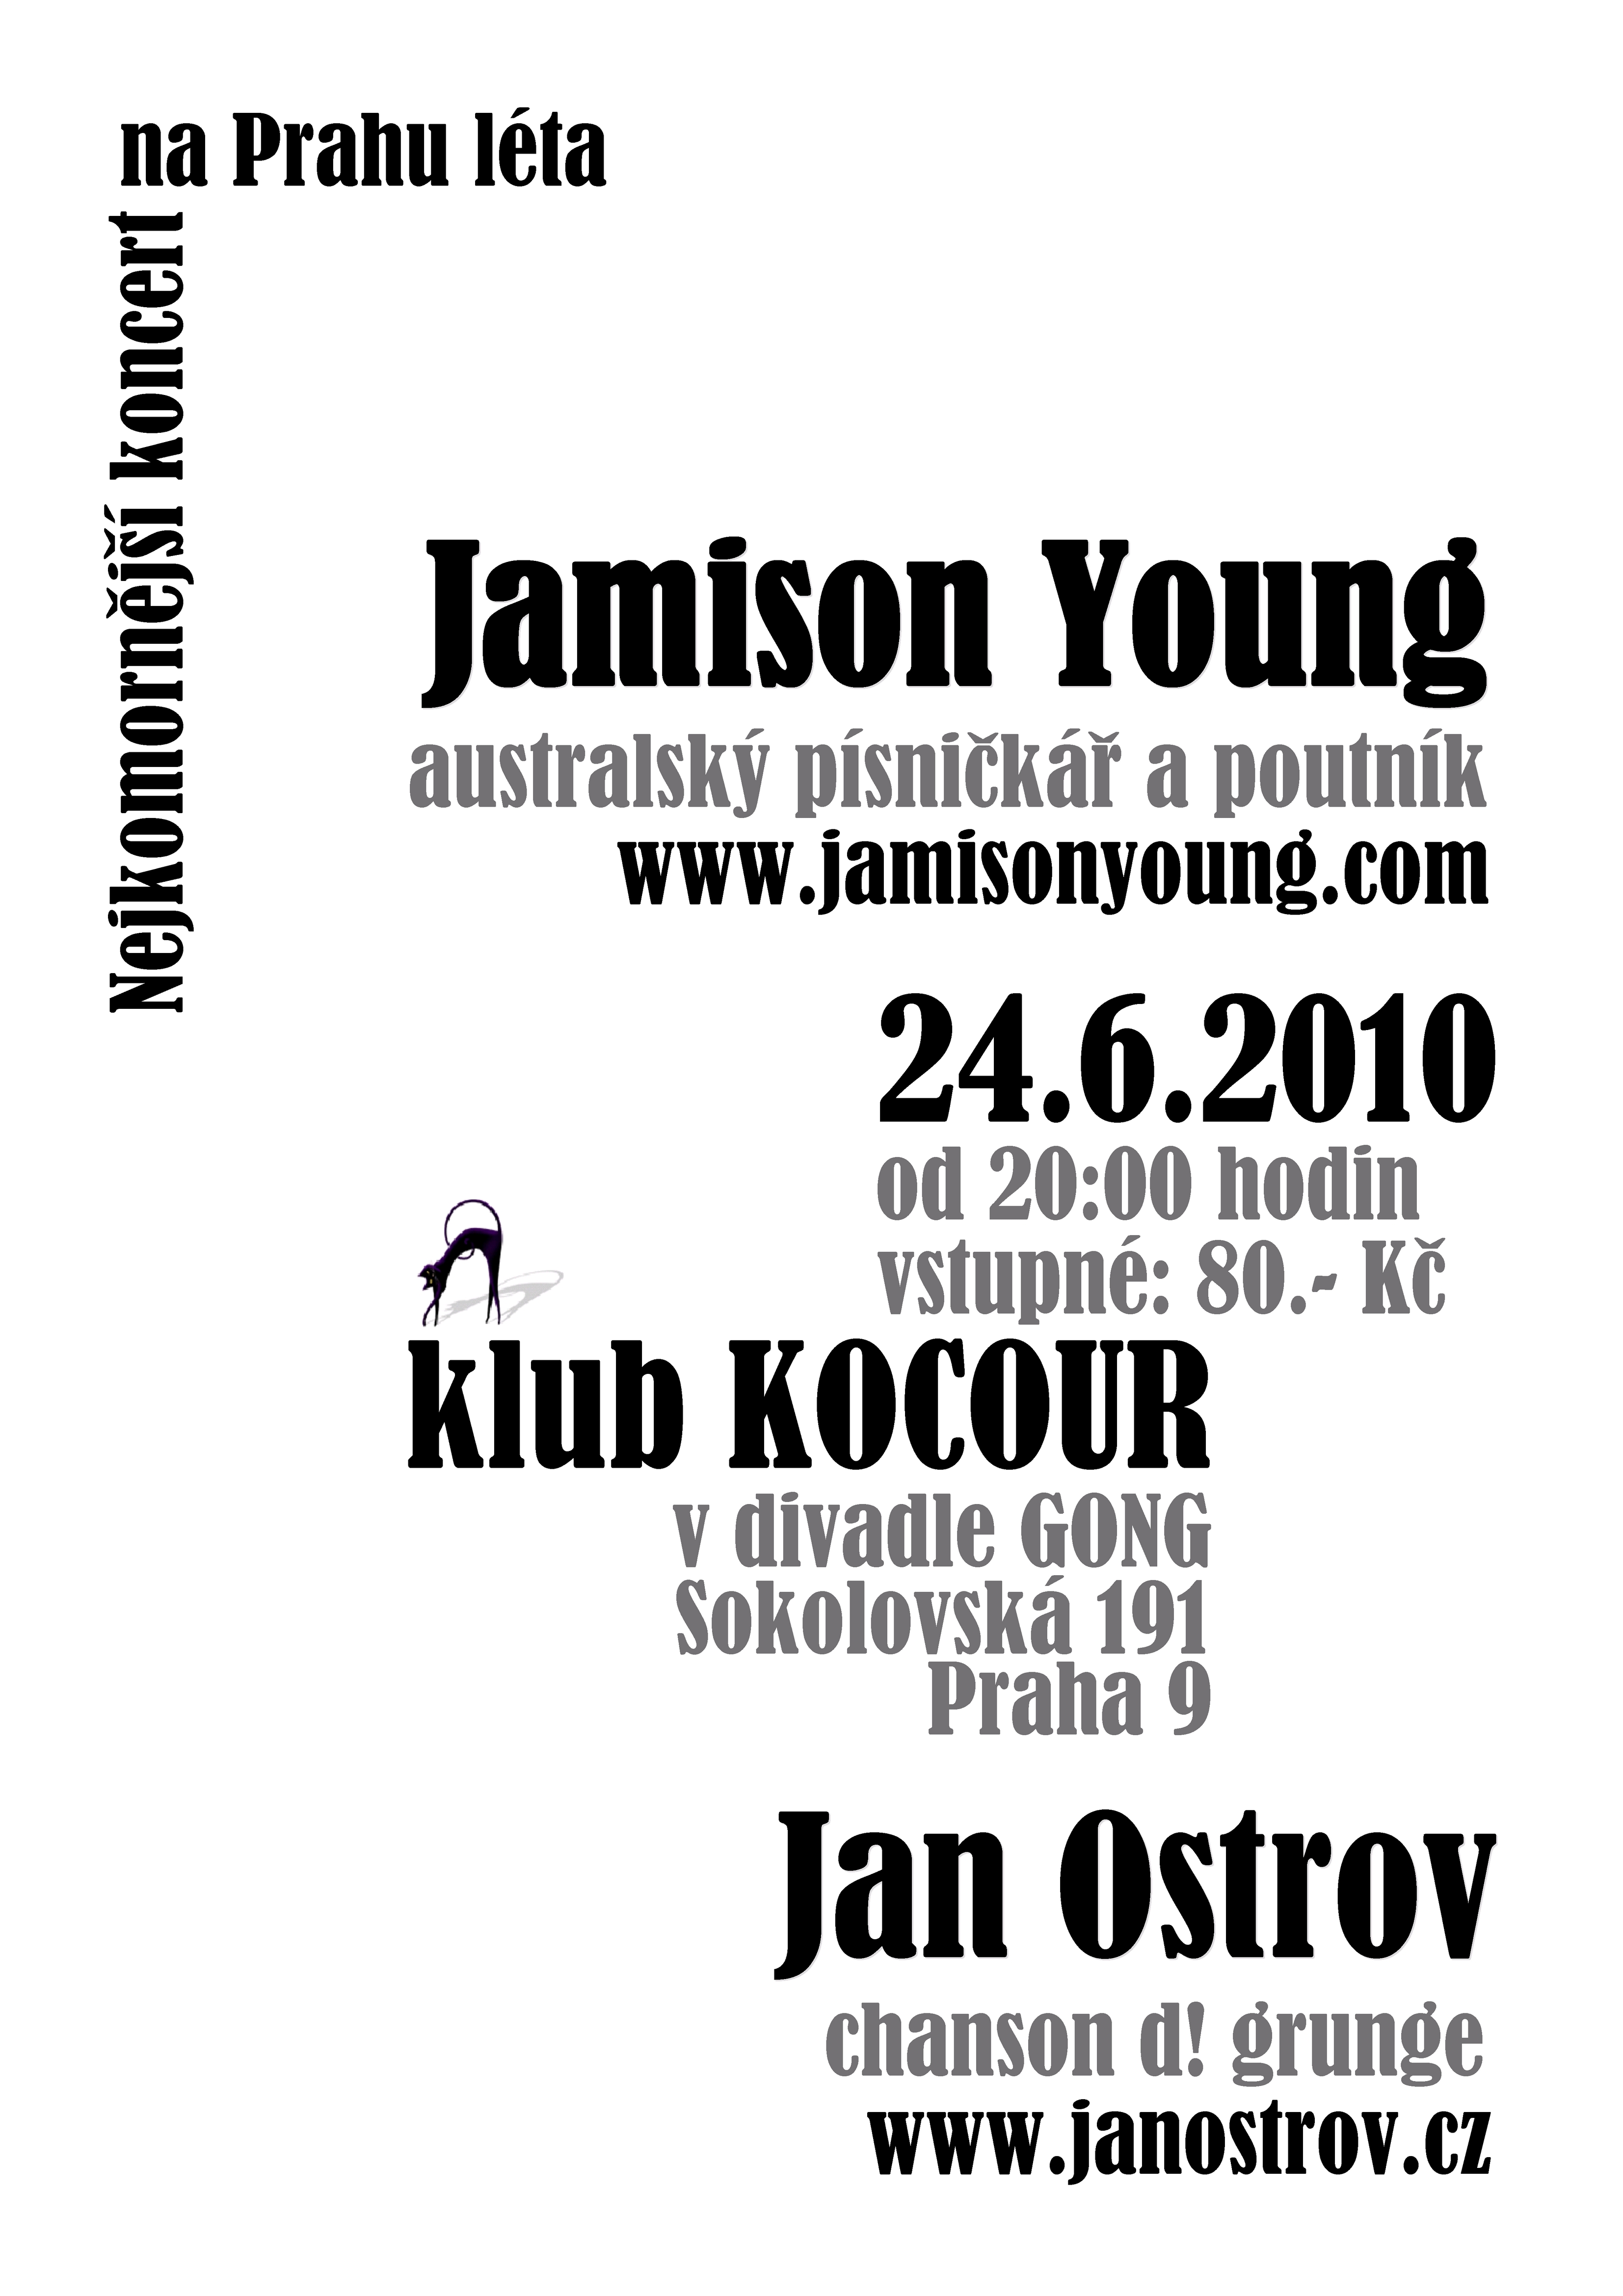 Společný koncert písničkářů | Jan Ostrov a Jamison Young 24. 6. 2010